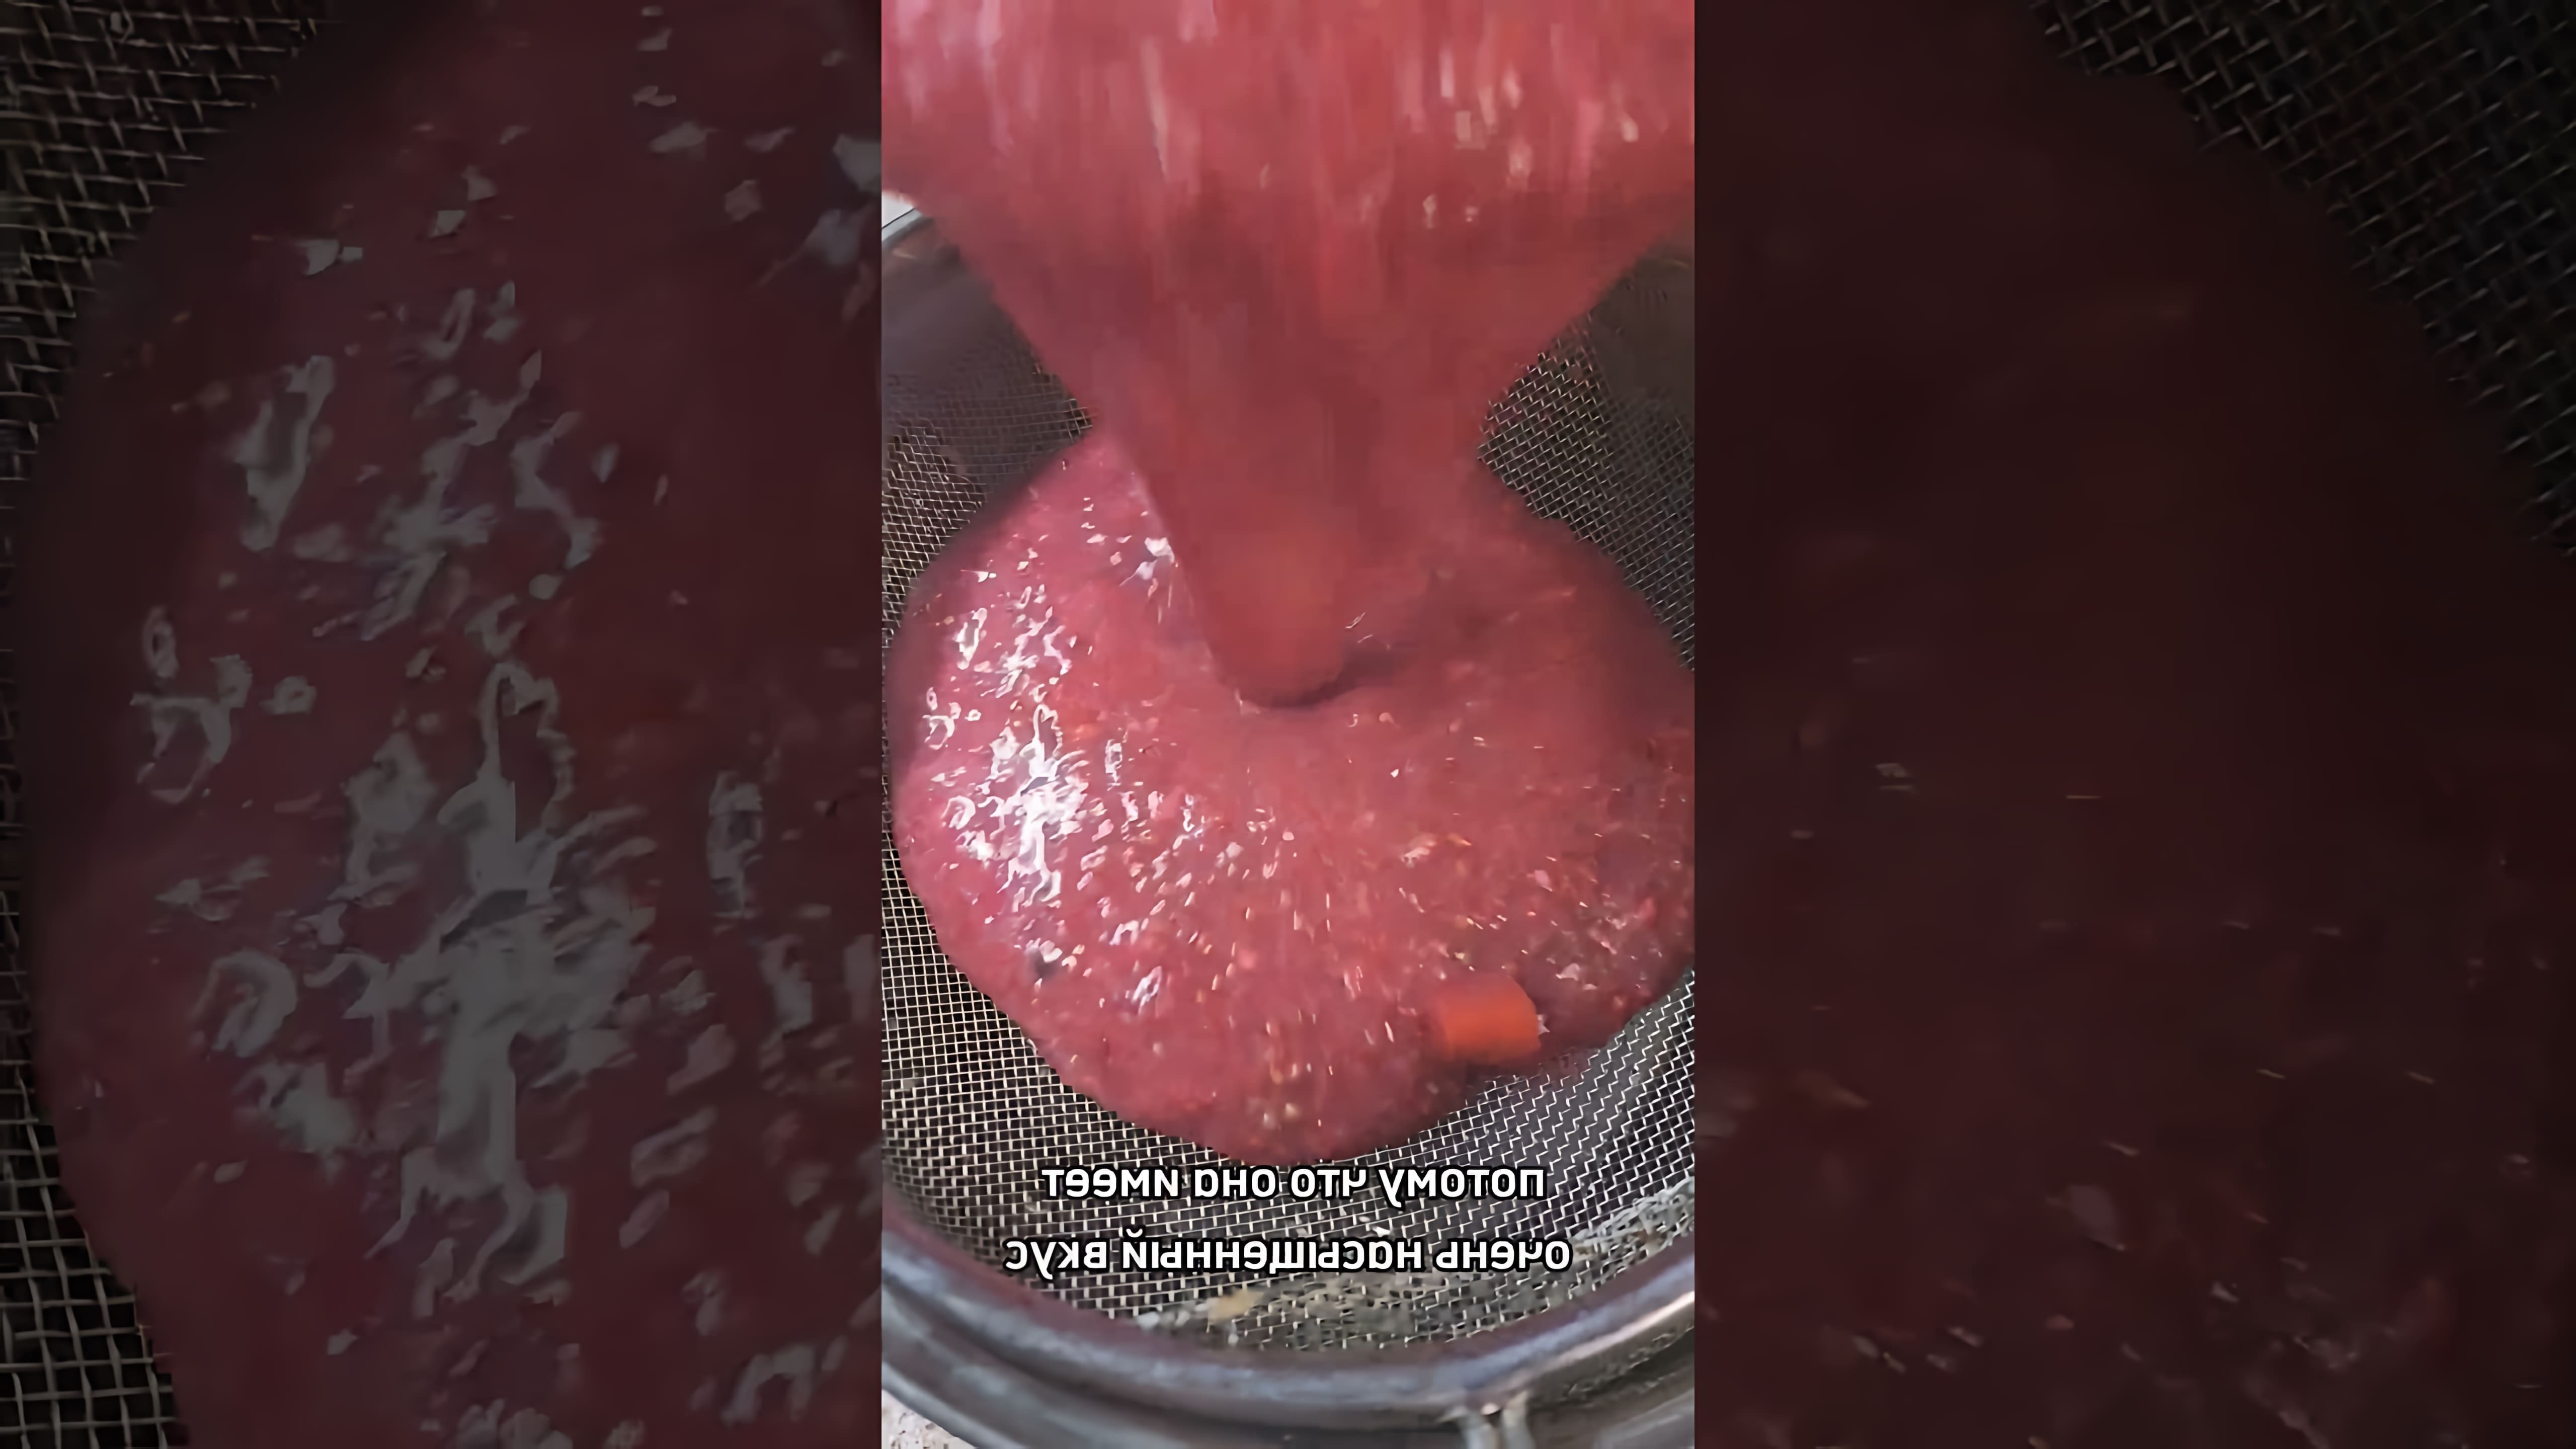 Видео описывает, как приготовить соус из красной смородины для подачи с мясом, рыбой или курицей